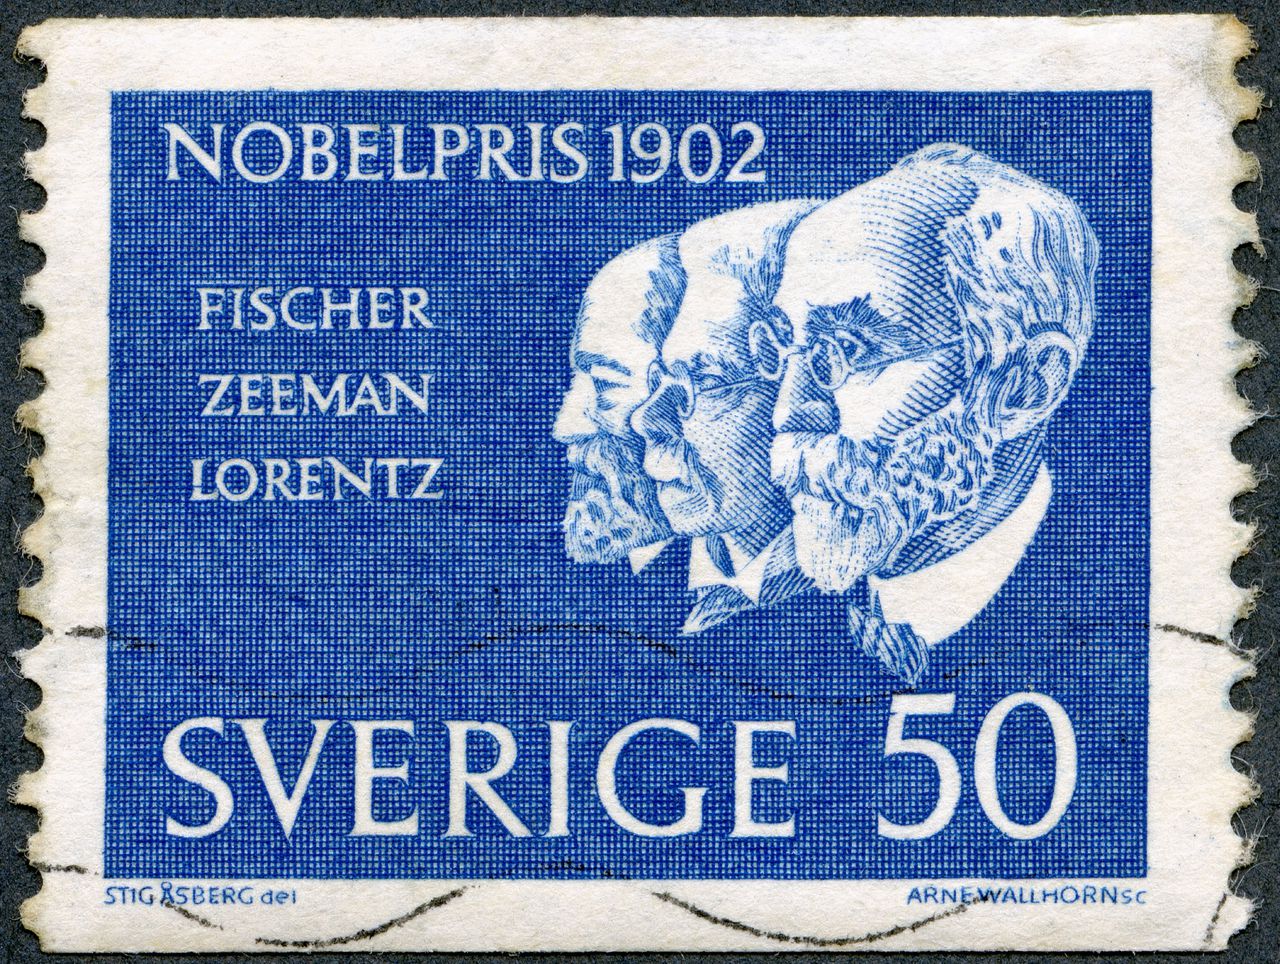 Postzegel die in Zweden verscheen ter gelegenheid van de Nobelprijs voor de Natuurkunde in 1902.